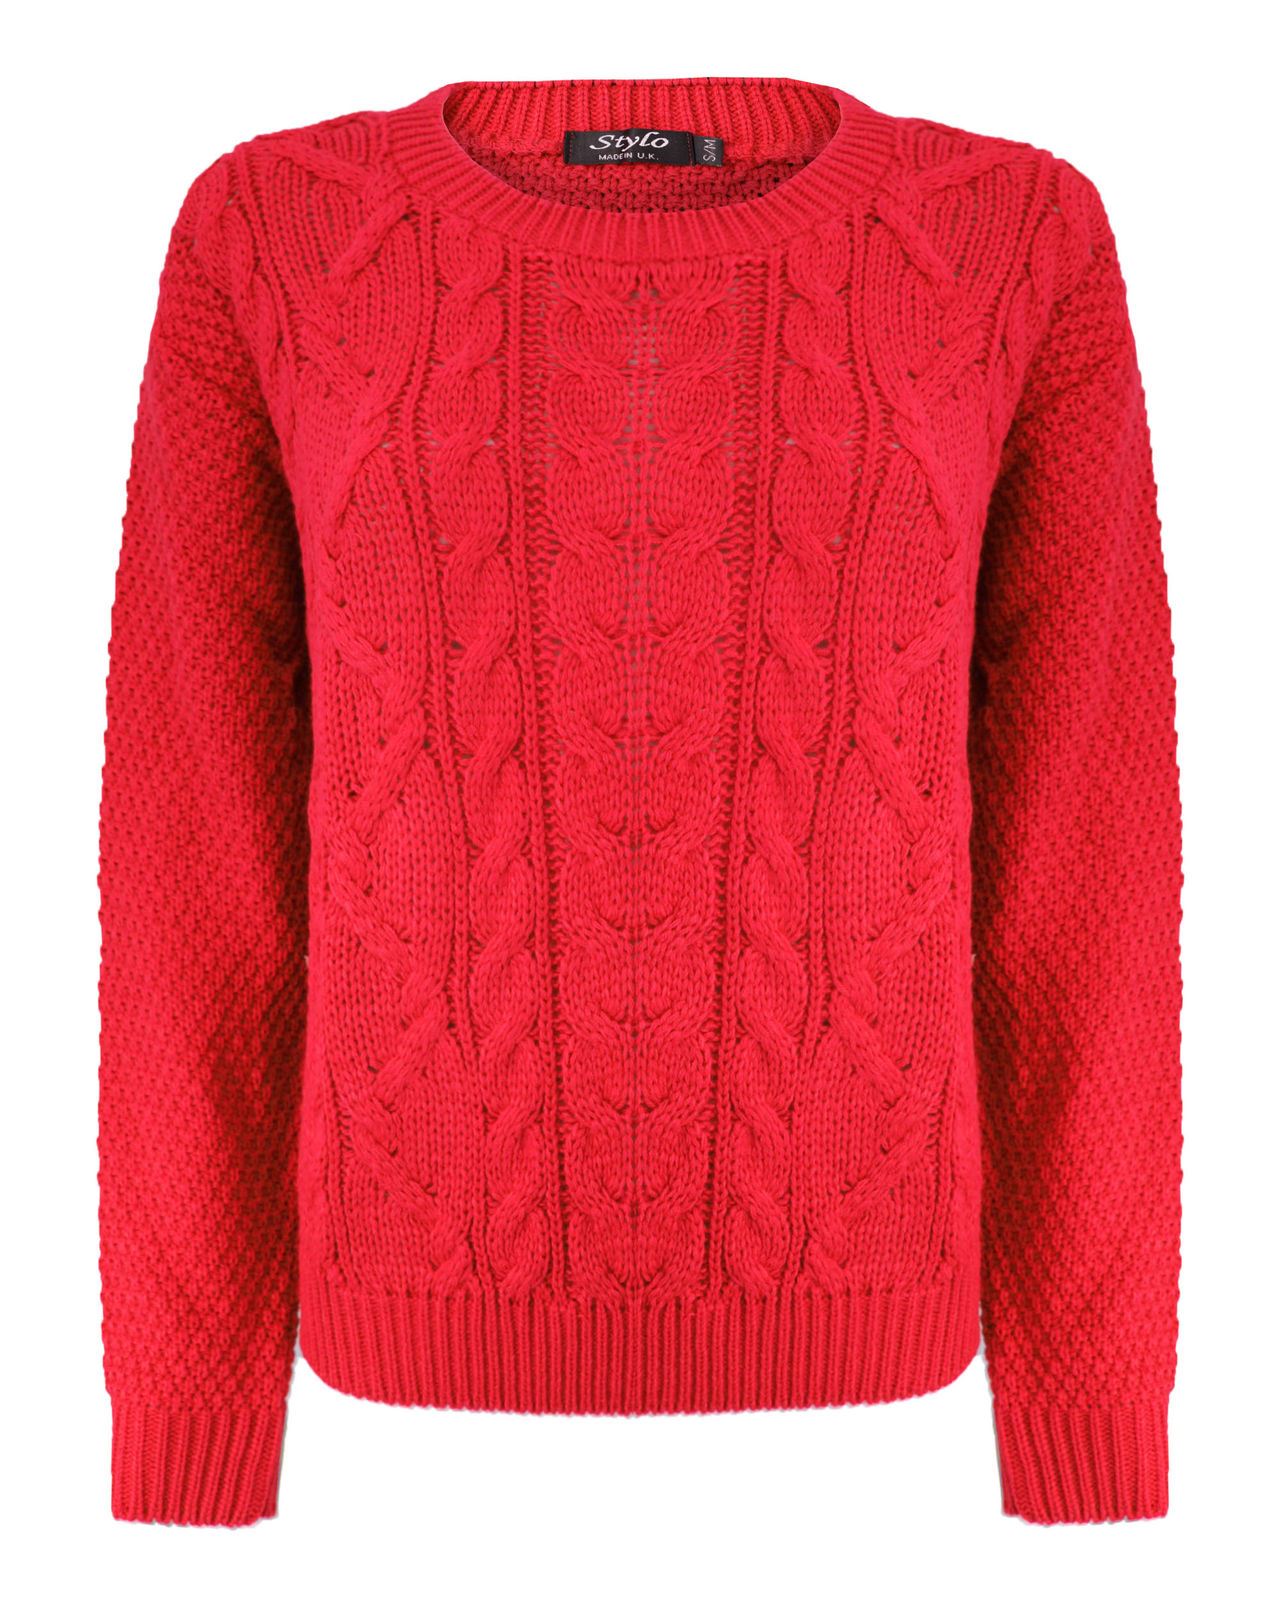 Women's red sweater photo